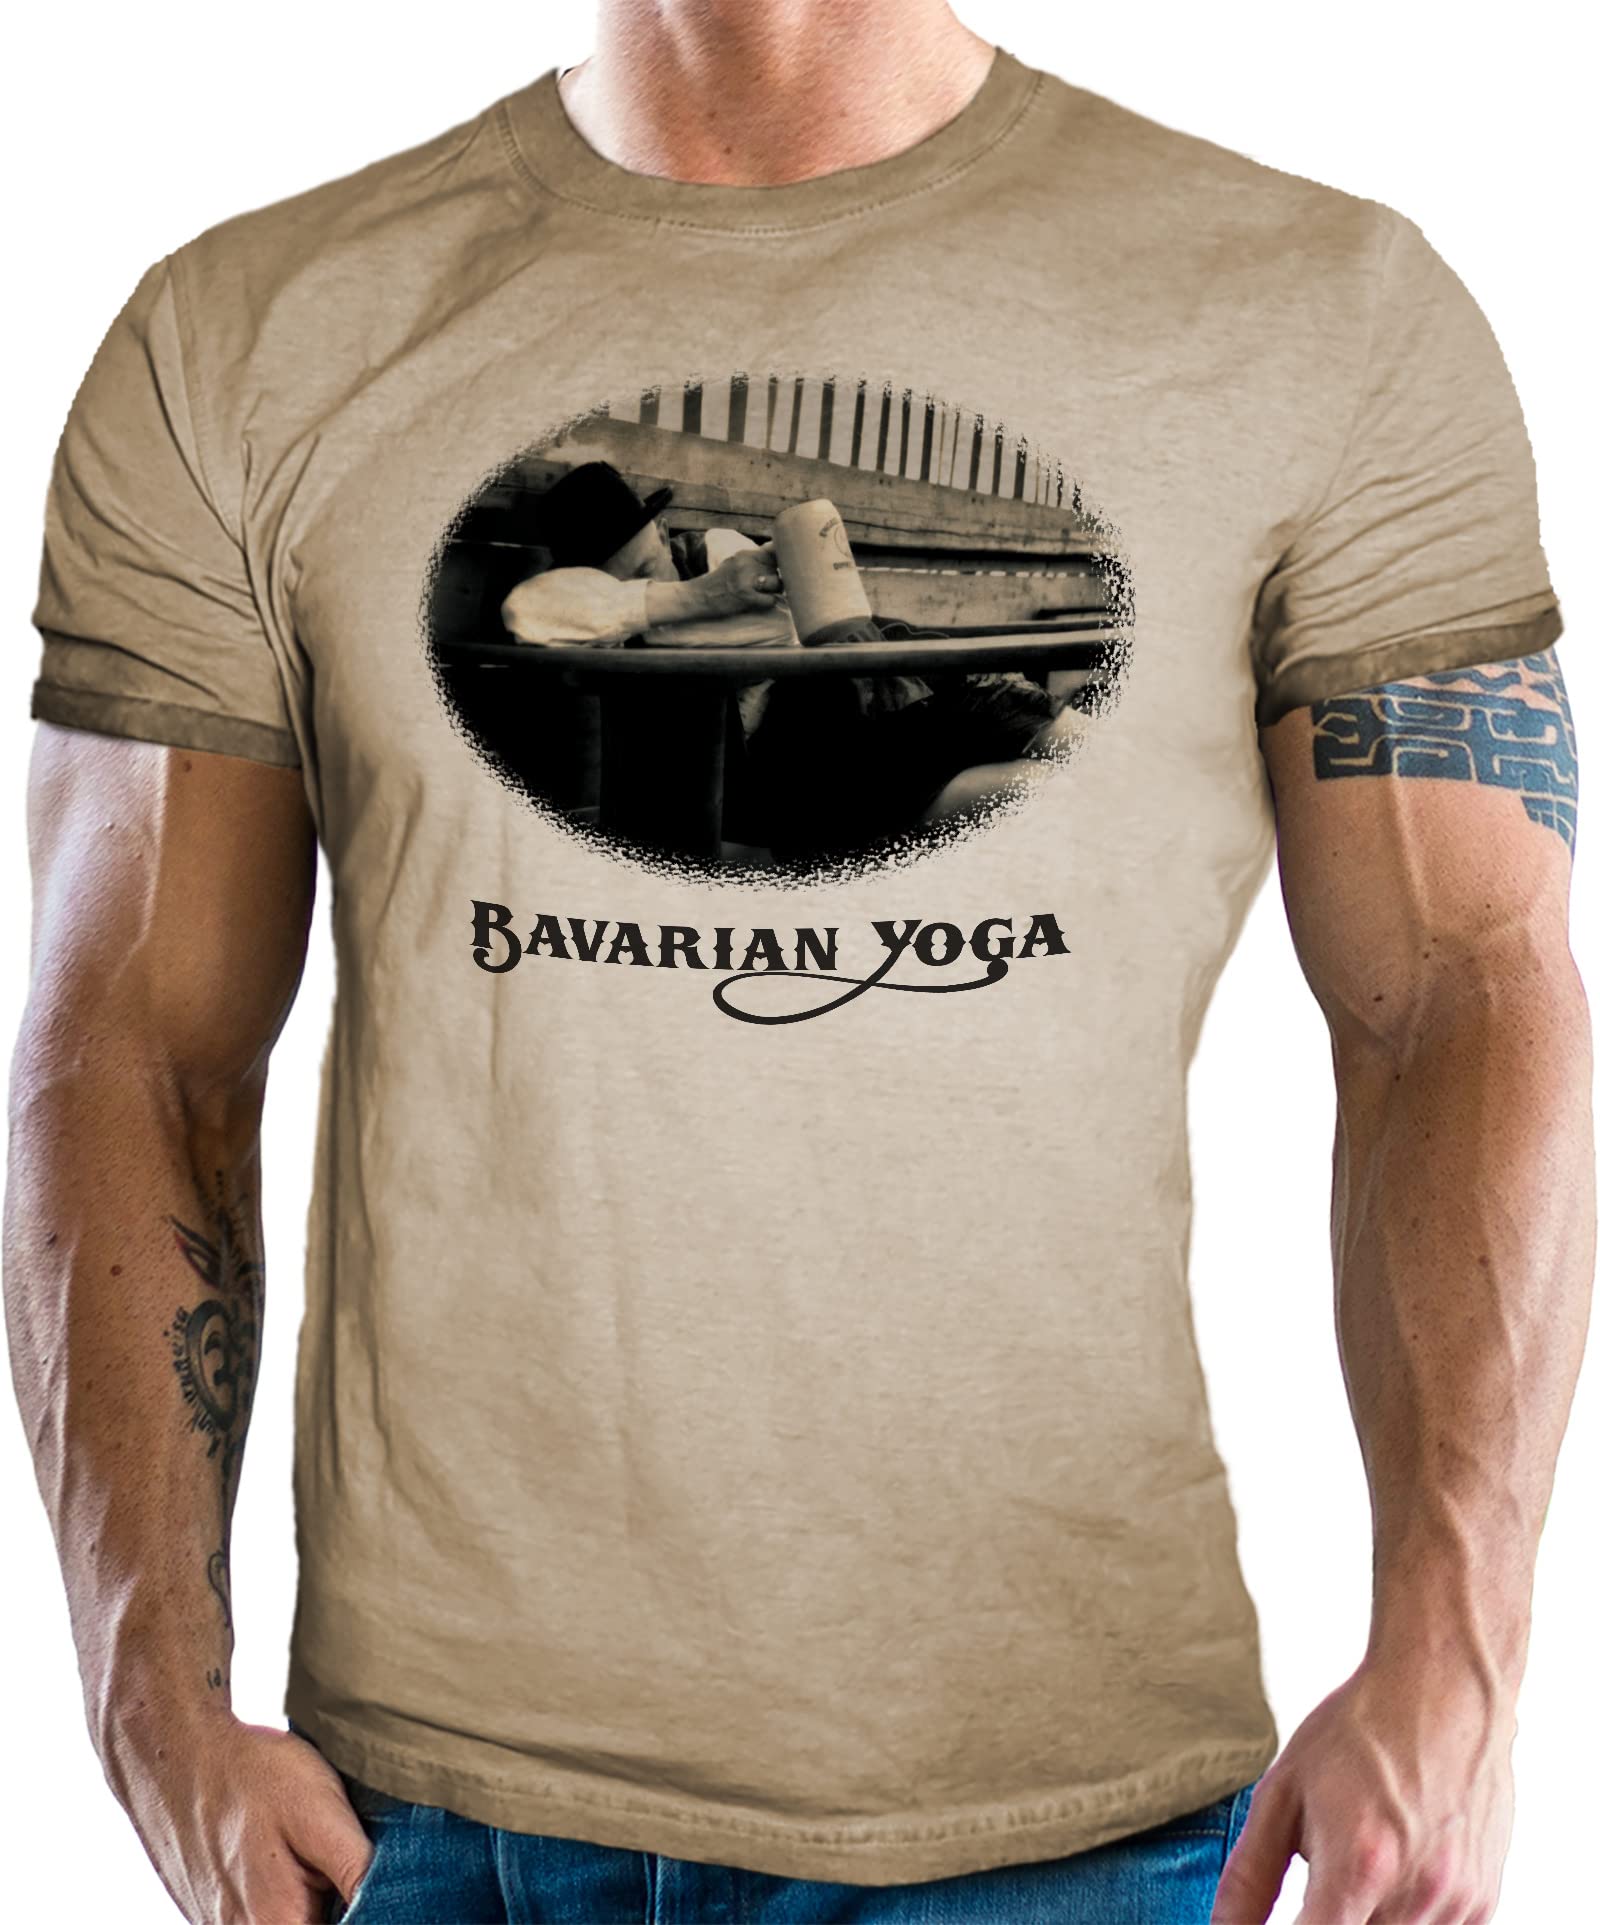 Für echte Bayern Fans - Trachten T-Shirt im Washed Vintage Retro Used Look: Bavarian Yoga